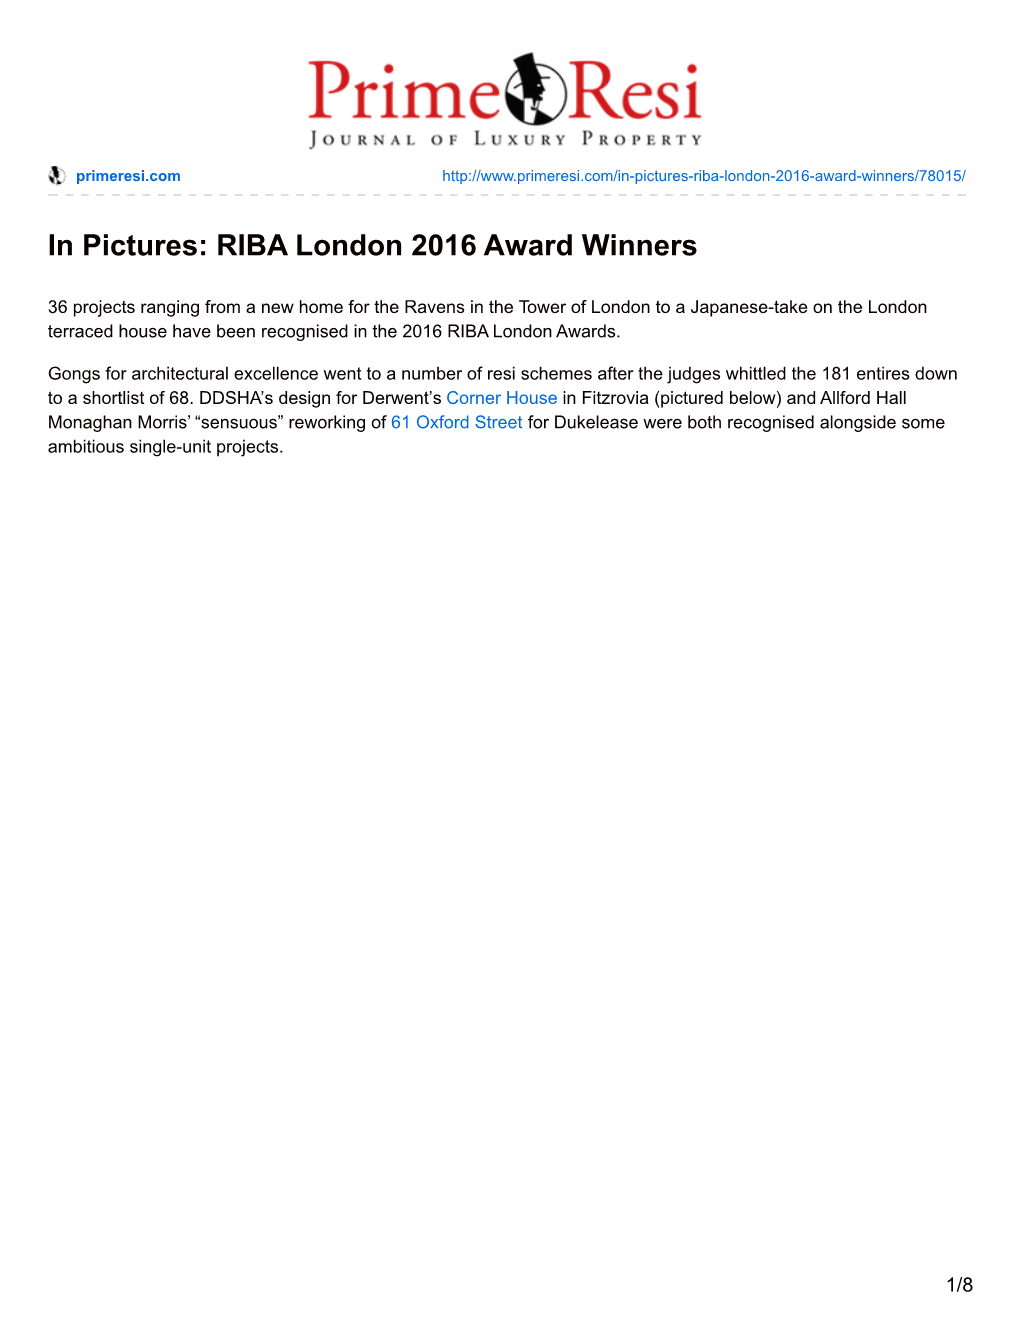 RIBA London 2016 Award Winners